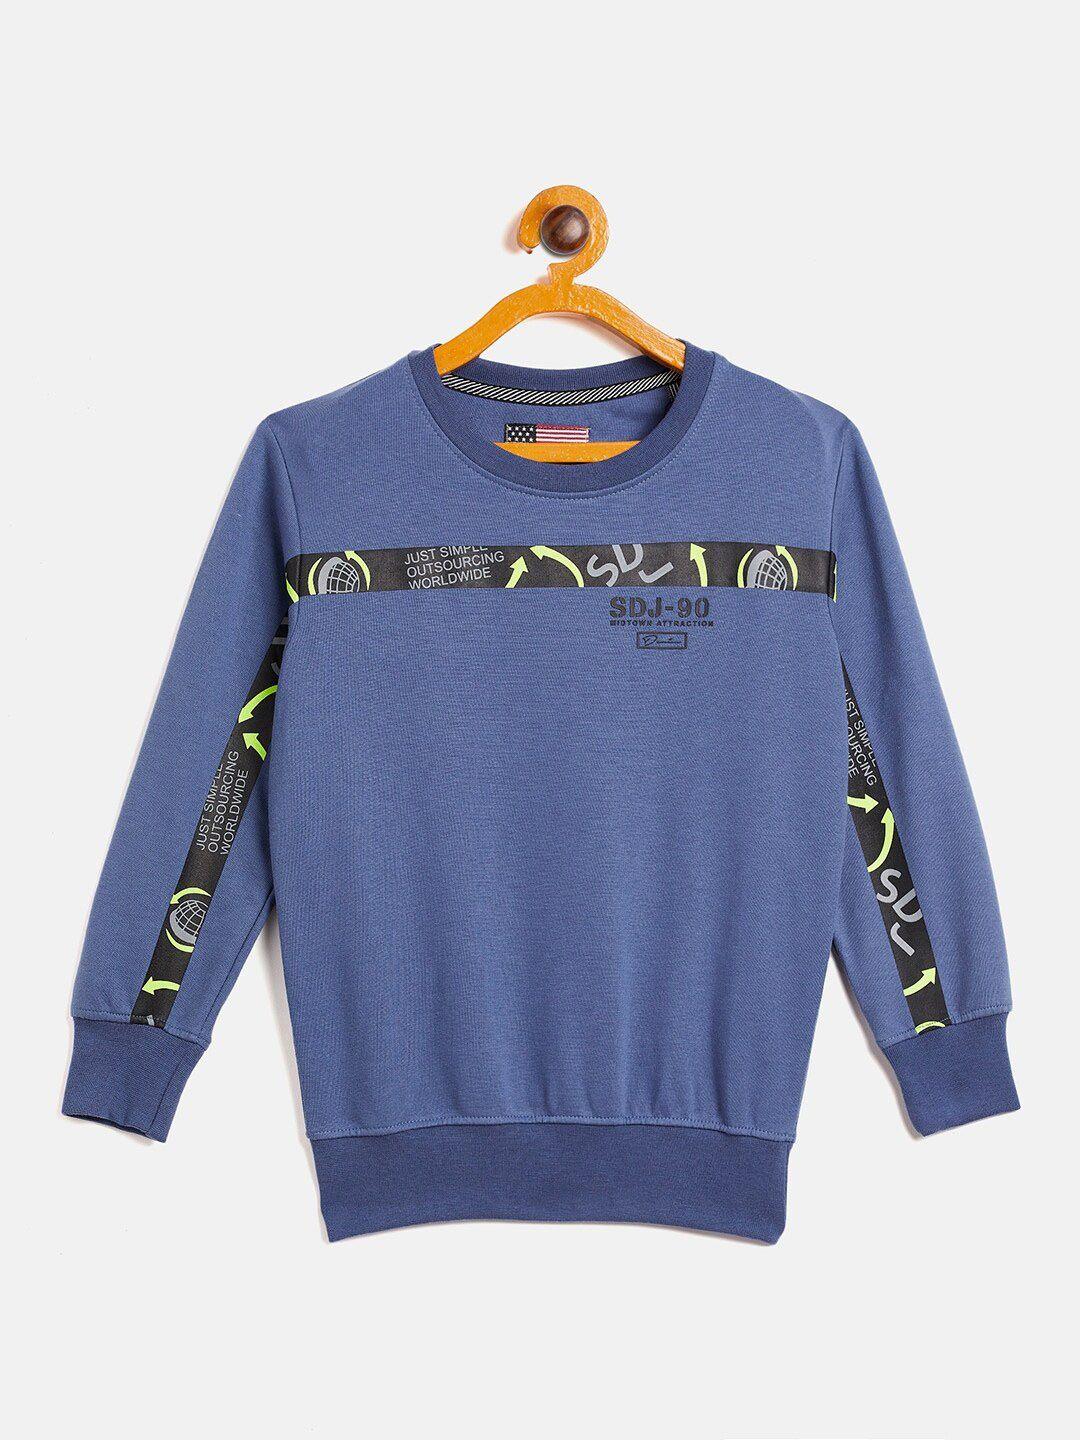 duke-boys-blue-printed-sweatshirt